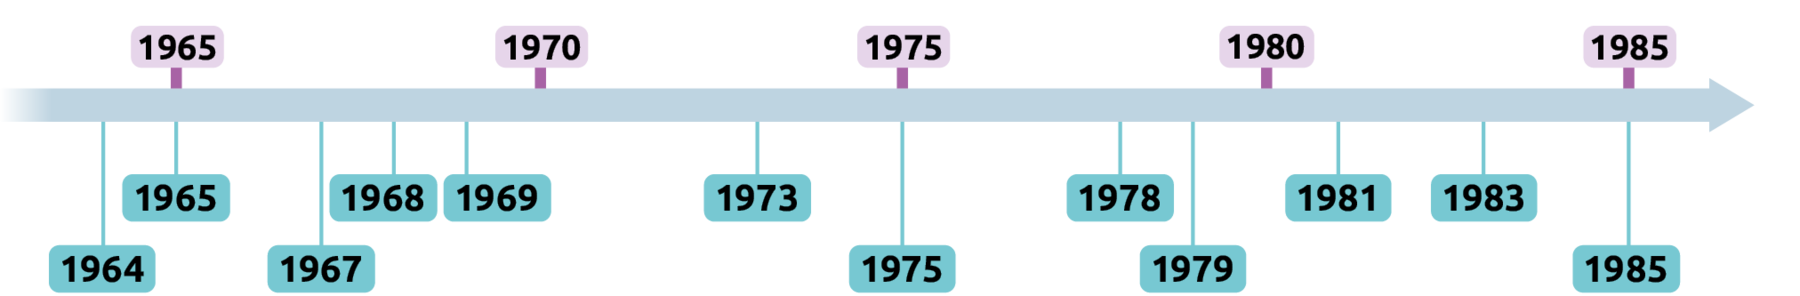 Linha do tempo: 1964; 1965; 1967; 1968; 1969; 1973; 1975; 1978; 1979; 1980, 1981; 1983, 1985.